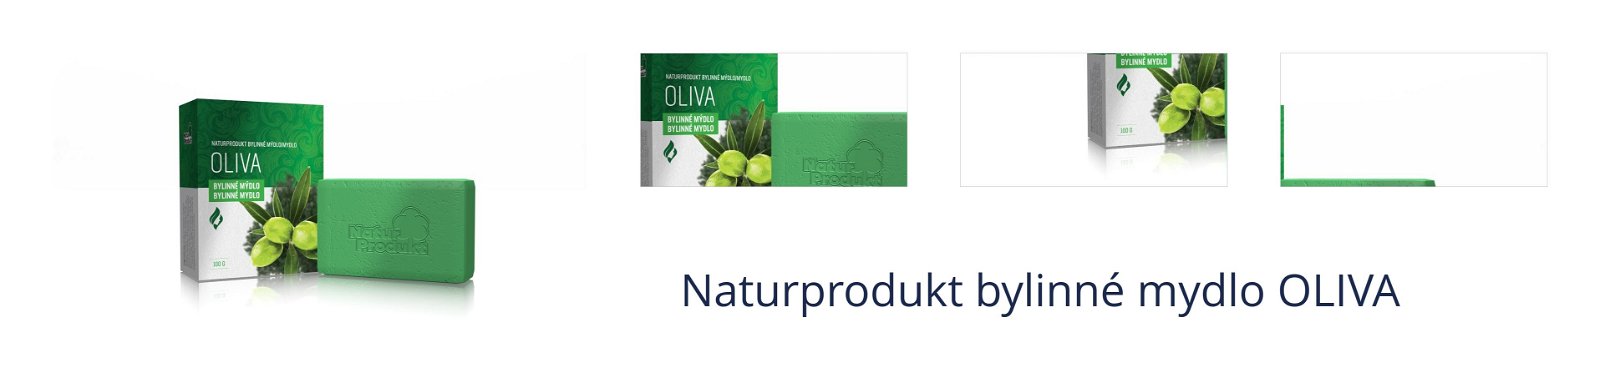 Naturprodukt bylinné mydlo OLIVA 1